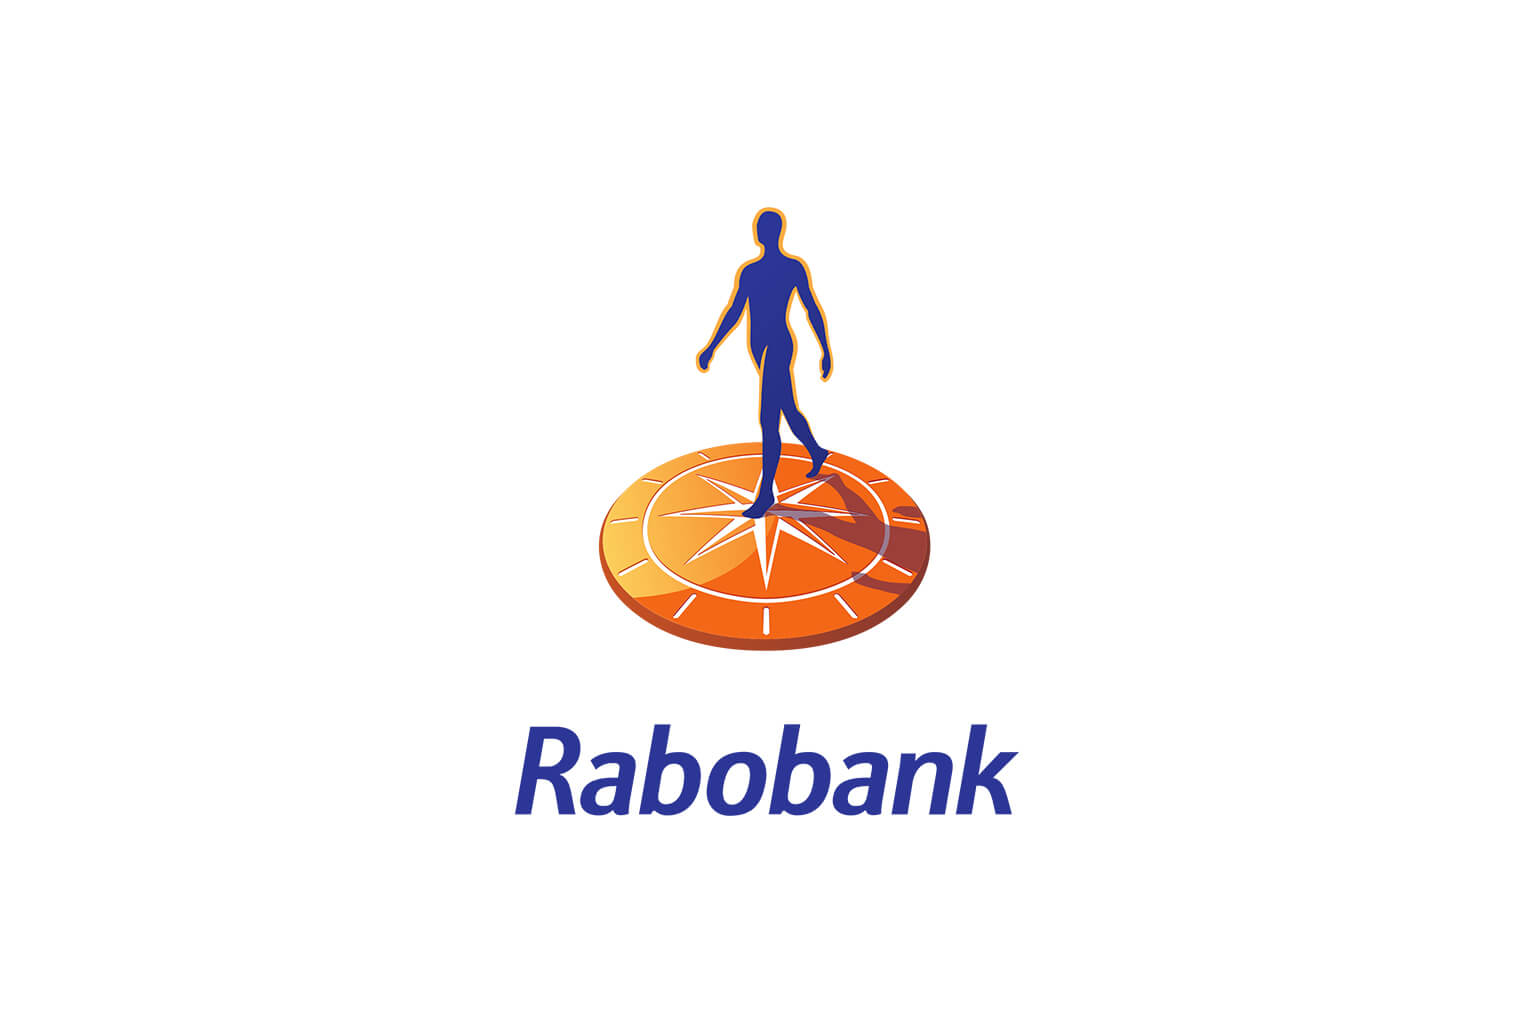 Rabobank logo image